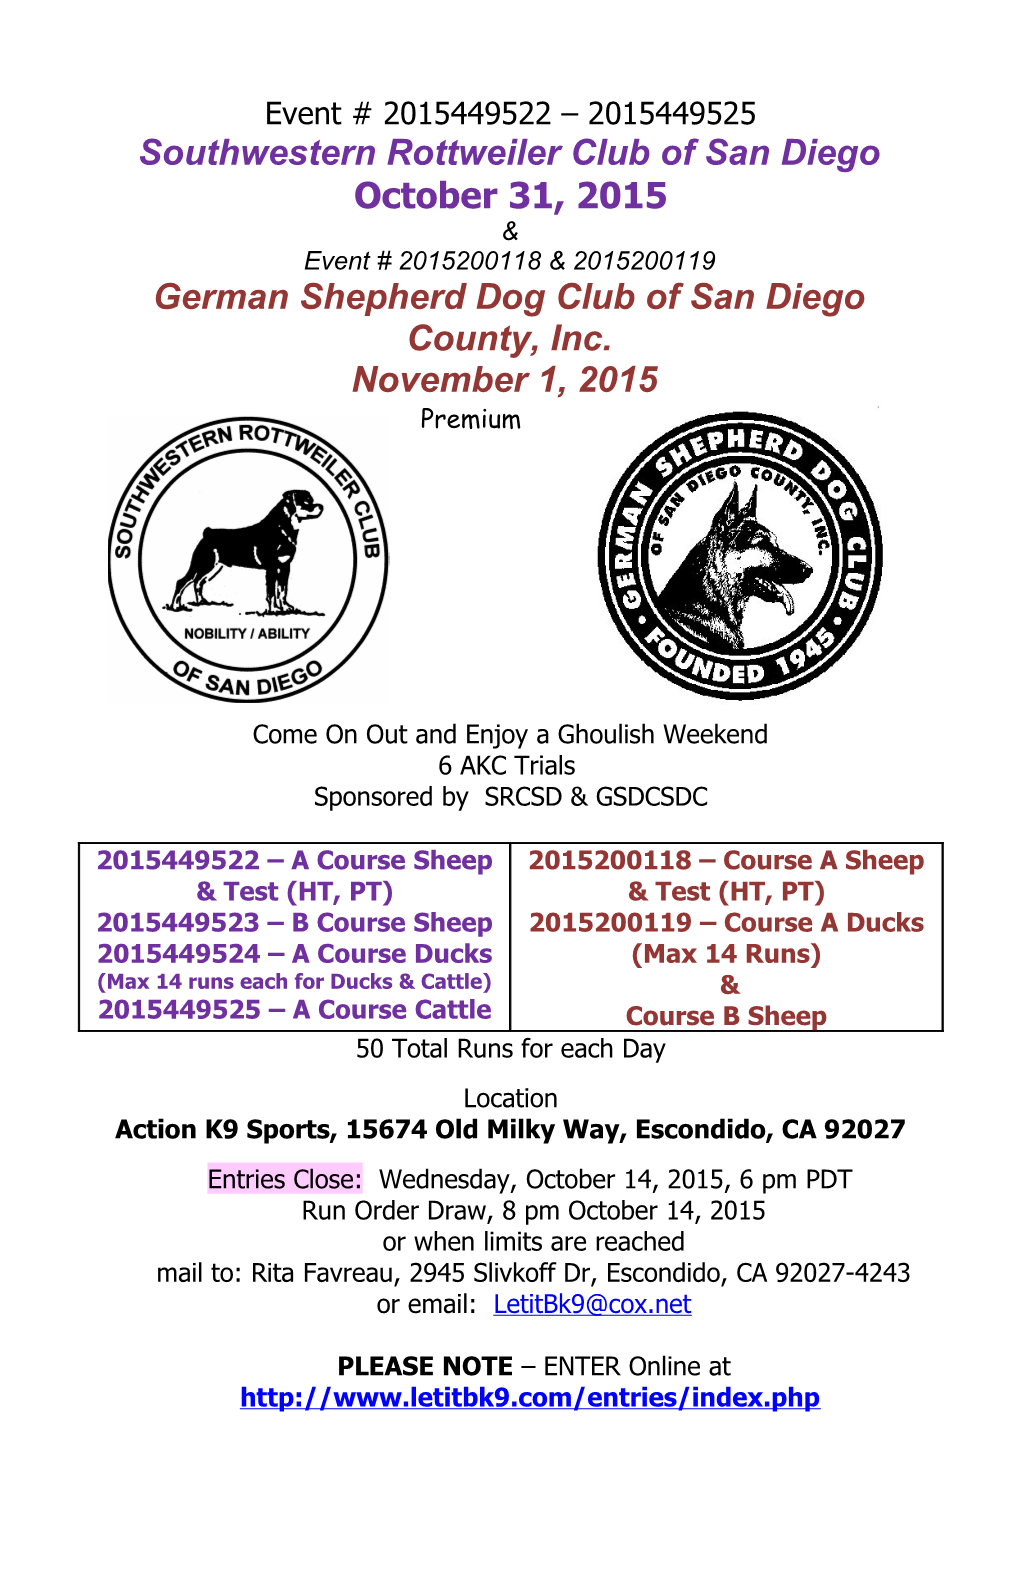 Southwestern Rottweiler Club of San Diego